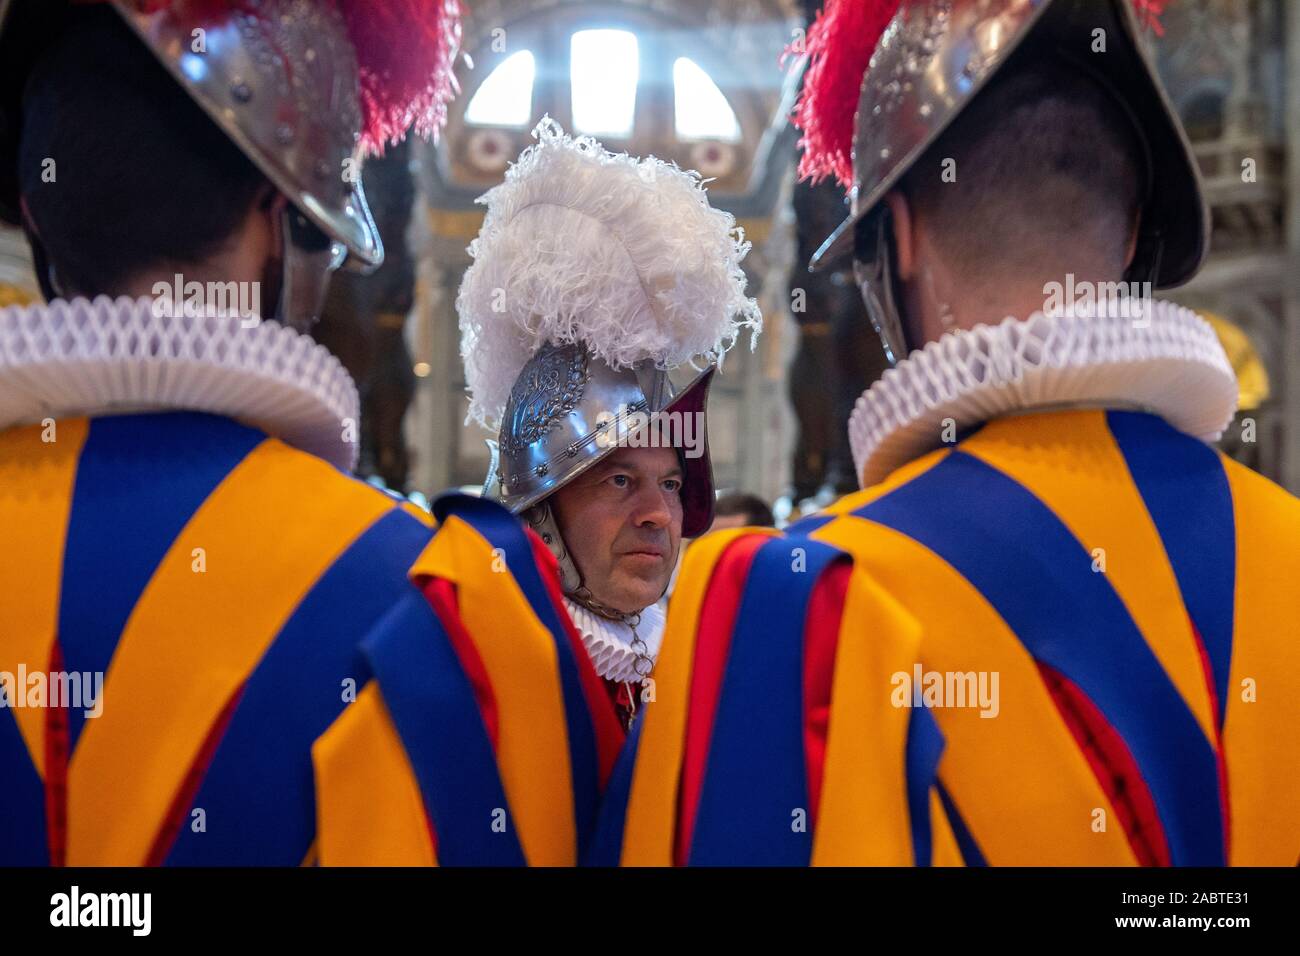 Il Corpo della Guardia Svizzera commander, Col Christoph Graf durante la Santa Messa nella Basilica di San Pietro per il 23 nuove guardie che prenderanno il giuramento solenne. Foto Stock